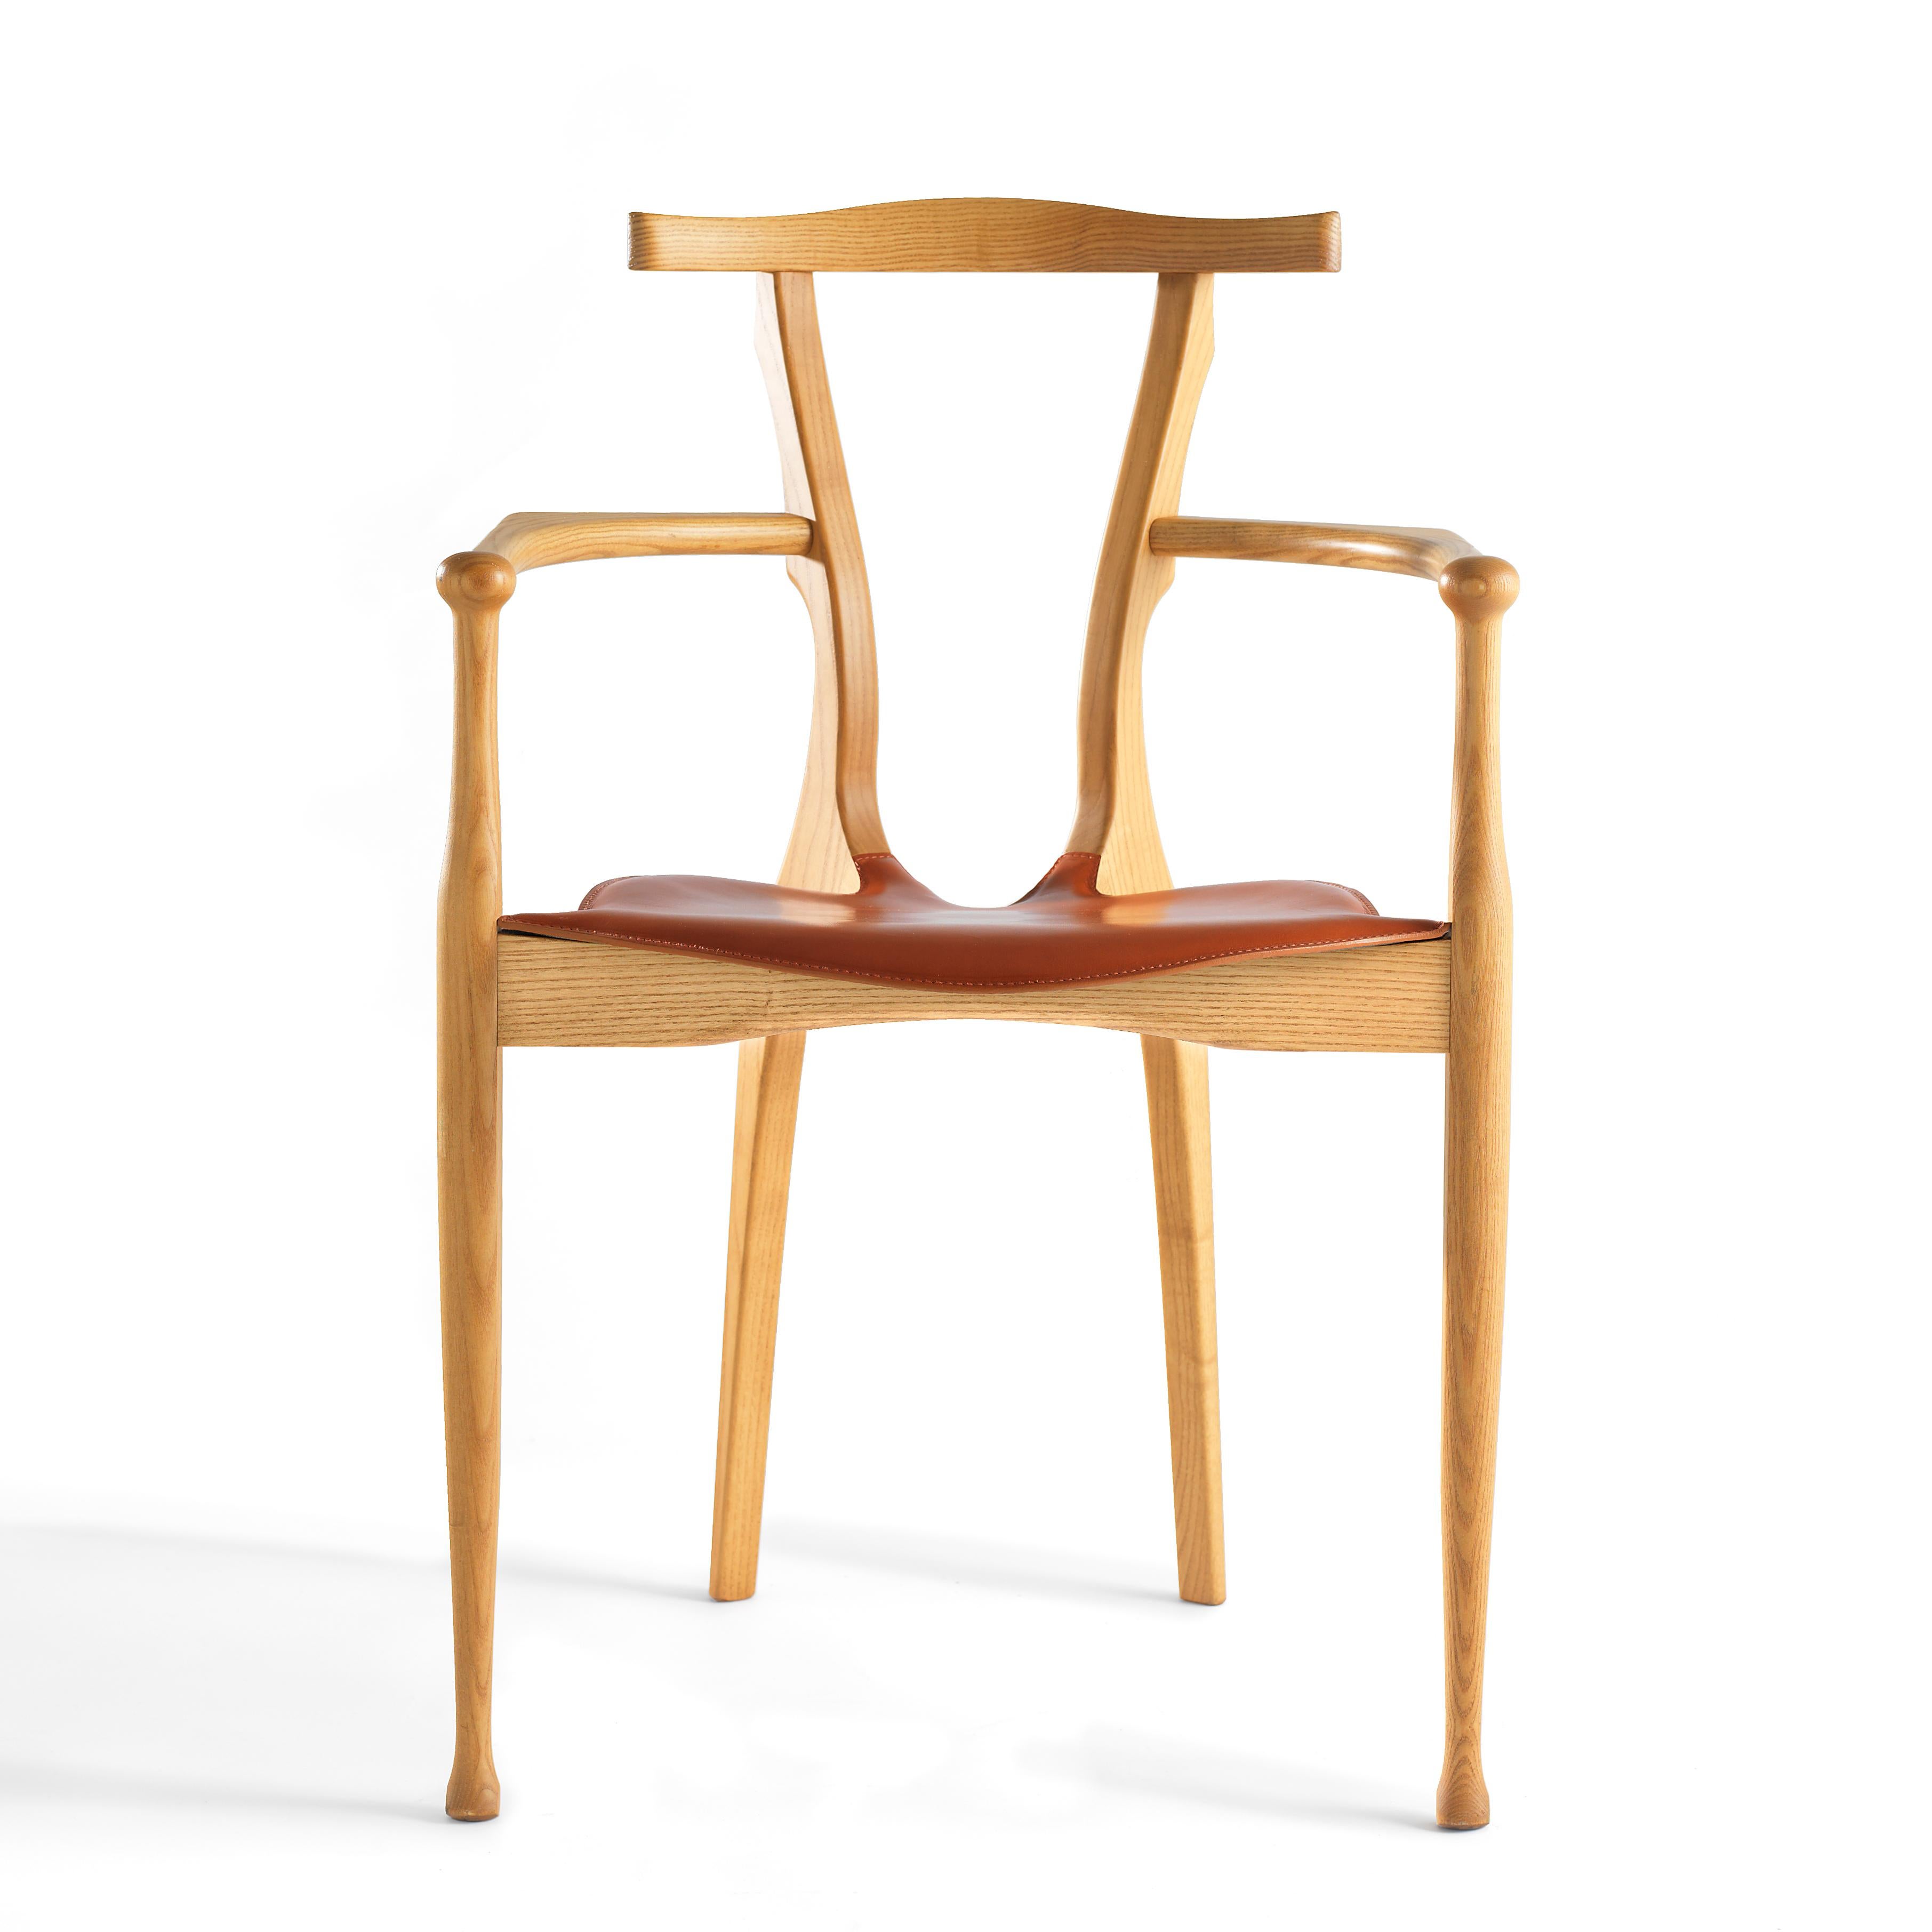 Gaulino Stuhl von Oscar Tusquets, hergestellt von BD Barcelona.

Massive, naturlackierte Esche mit Sitz aus Naturleder.